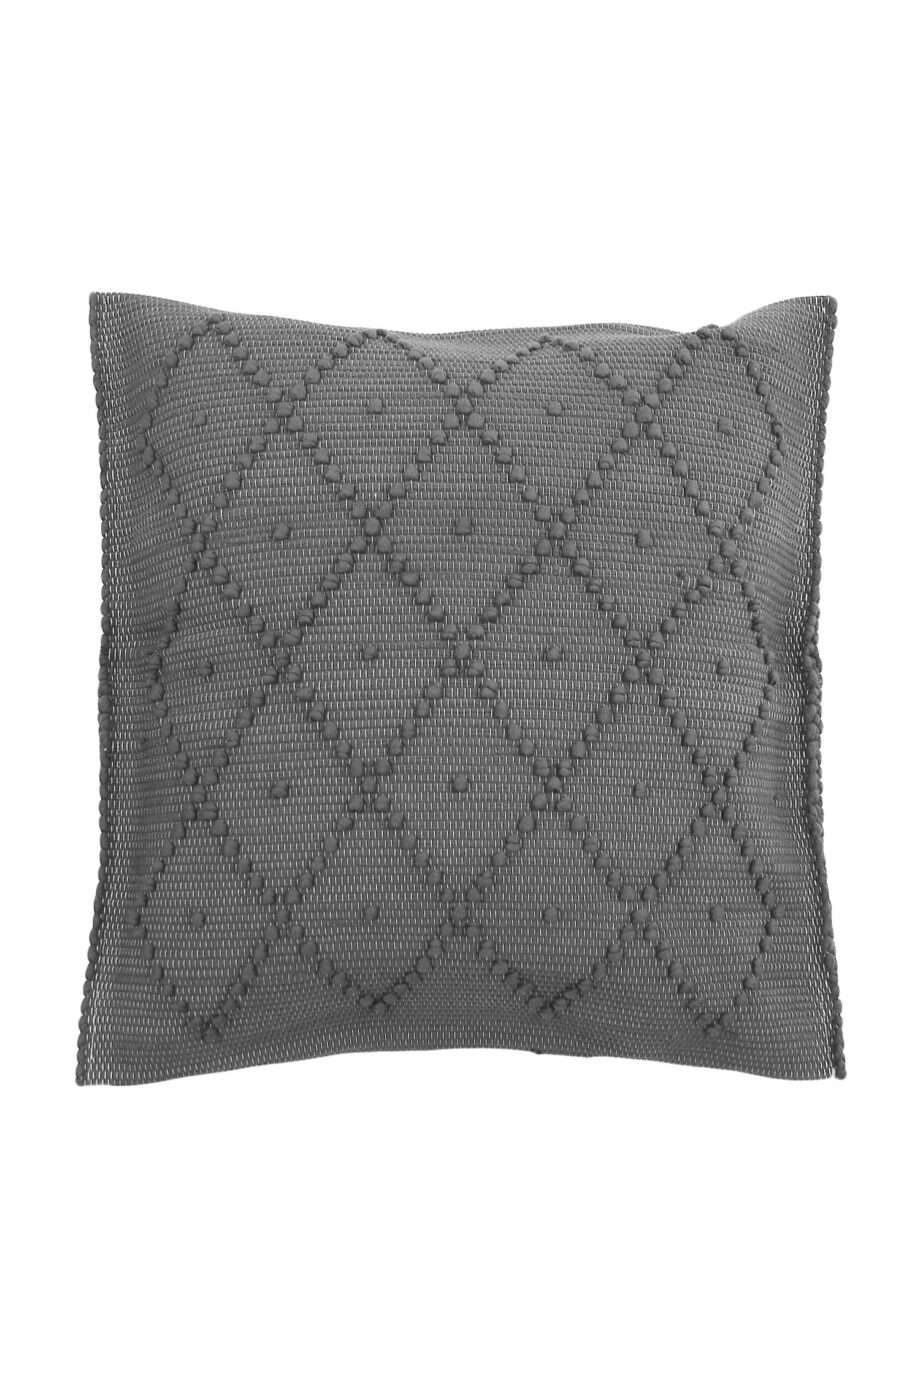 diamond grey woven cotton pillowcase medium